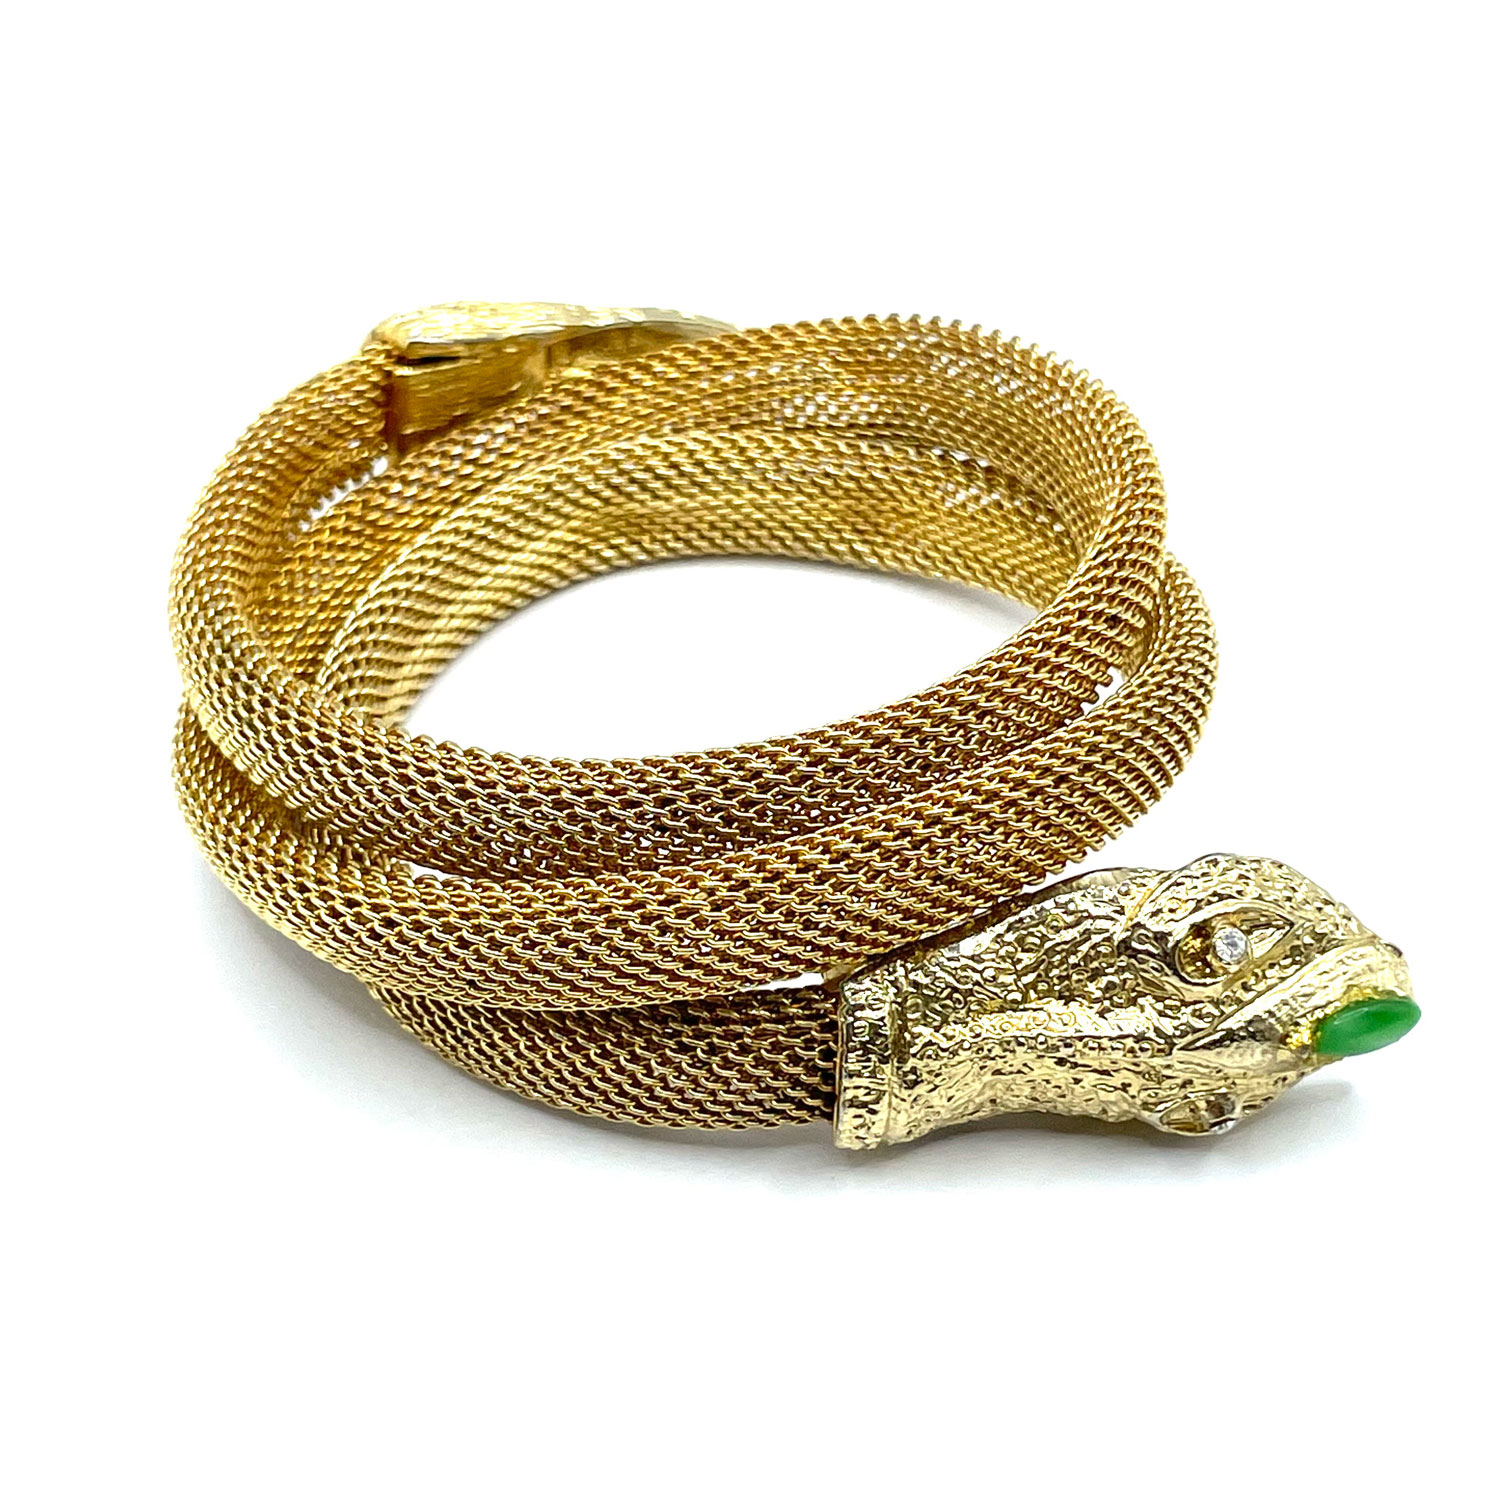 Hobe mesh snake bracelet